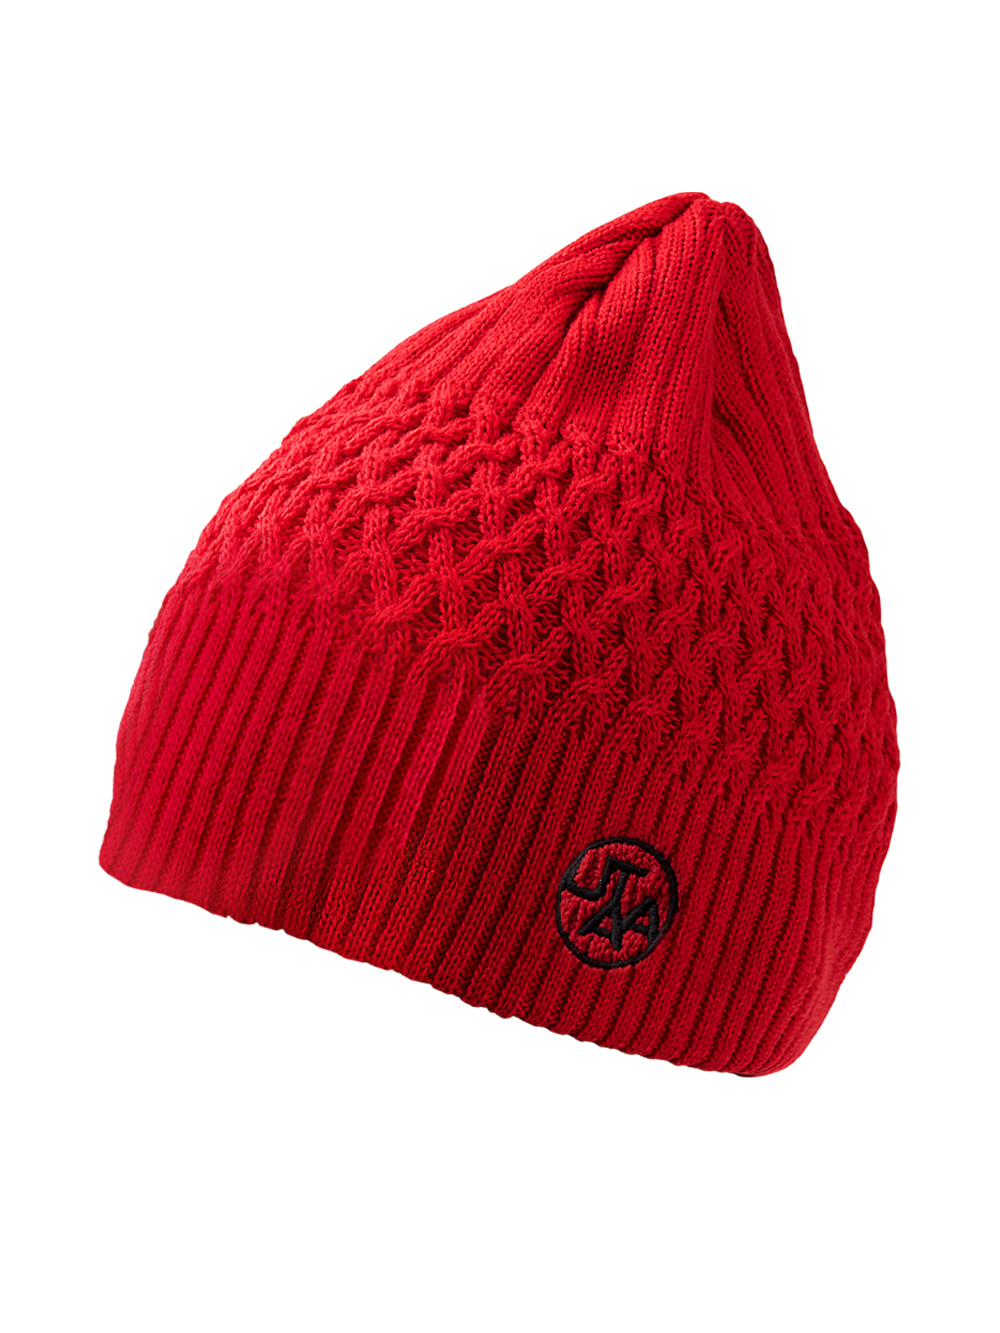 UTAA Whipping Knit Beanie : Red (UA4GCF750RD)